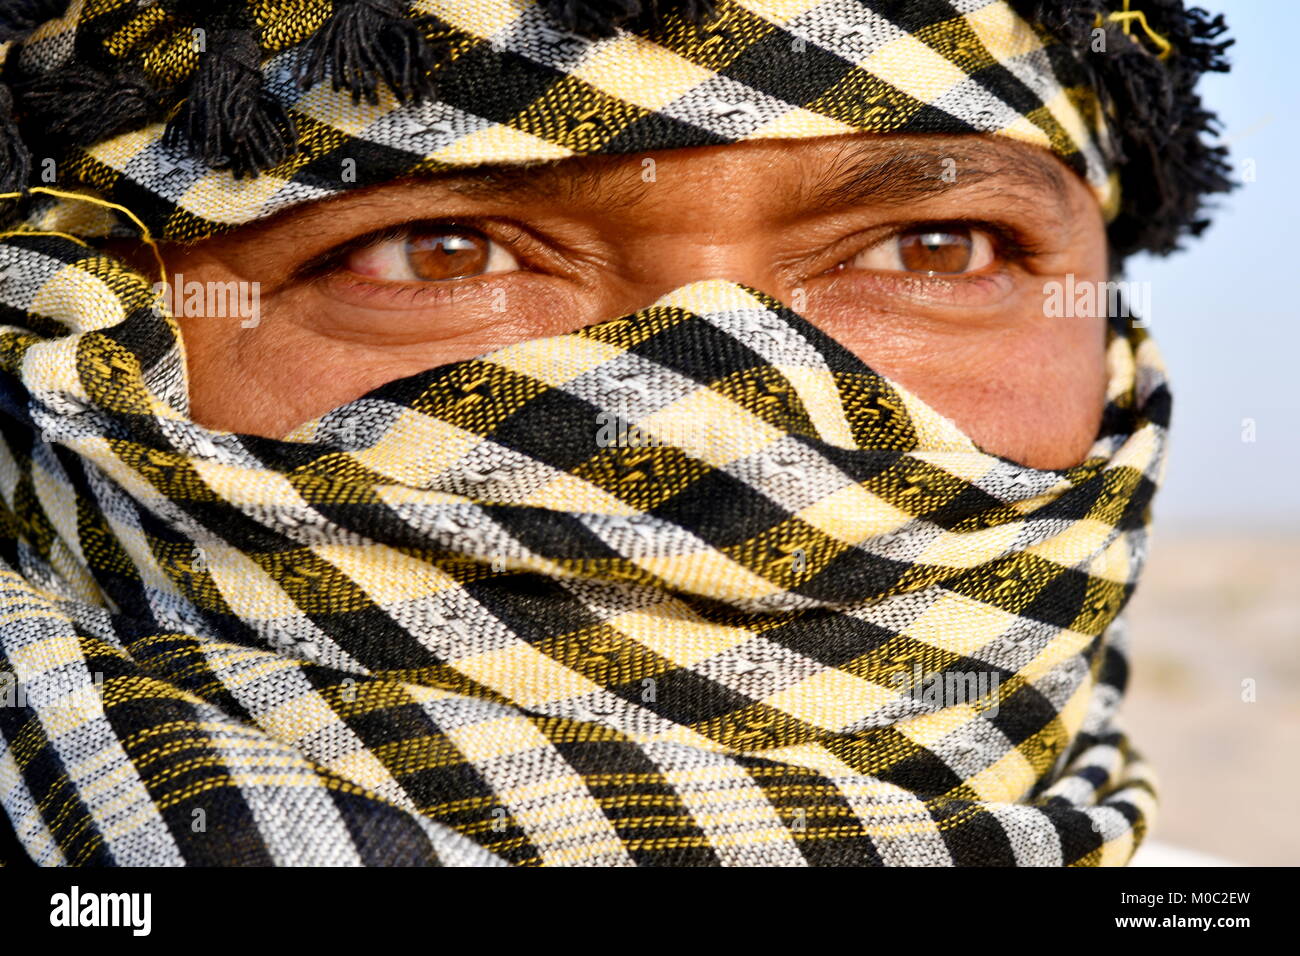 Cerrar retratos de árabe en el desierto, el hombre llevaba un pañuelo de  cabeza como una tradición de cultura Fotografía de stock - Alamy